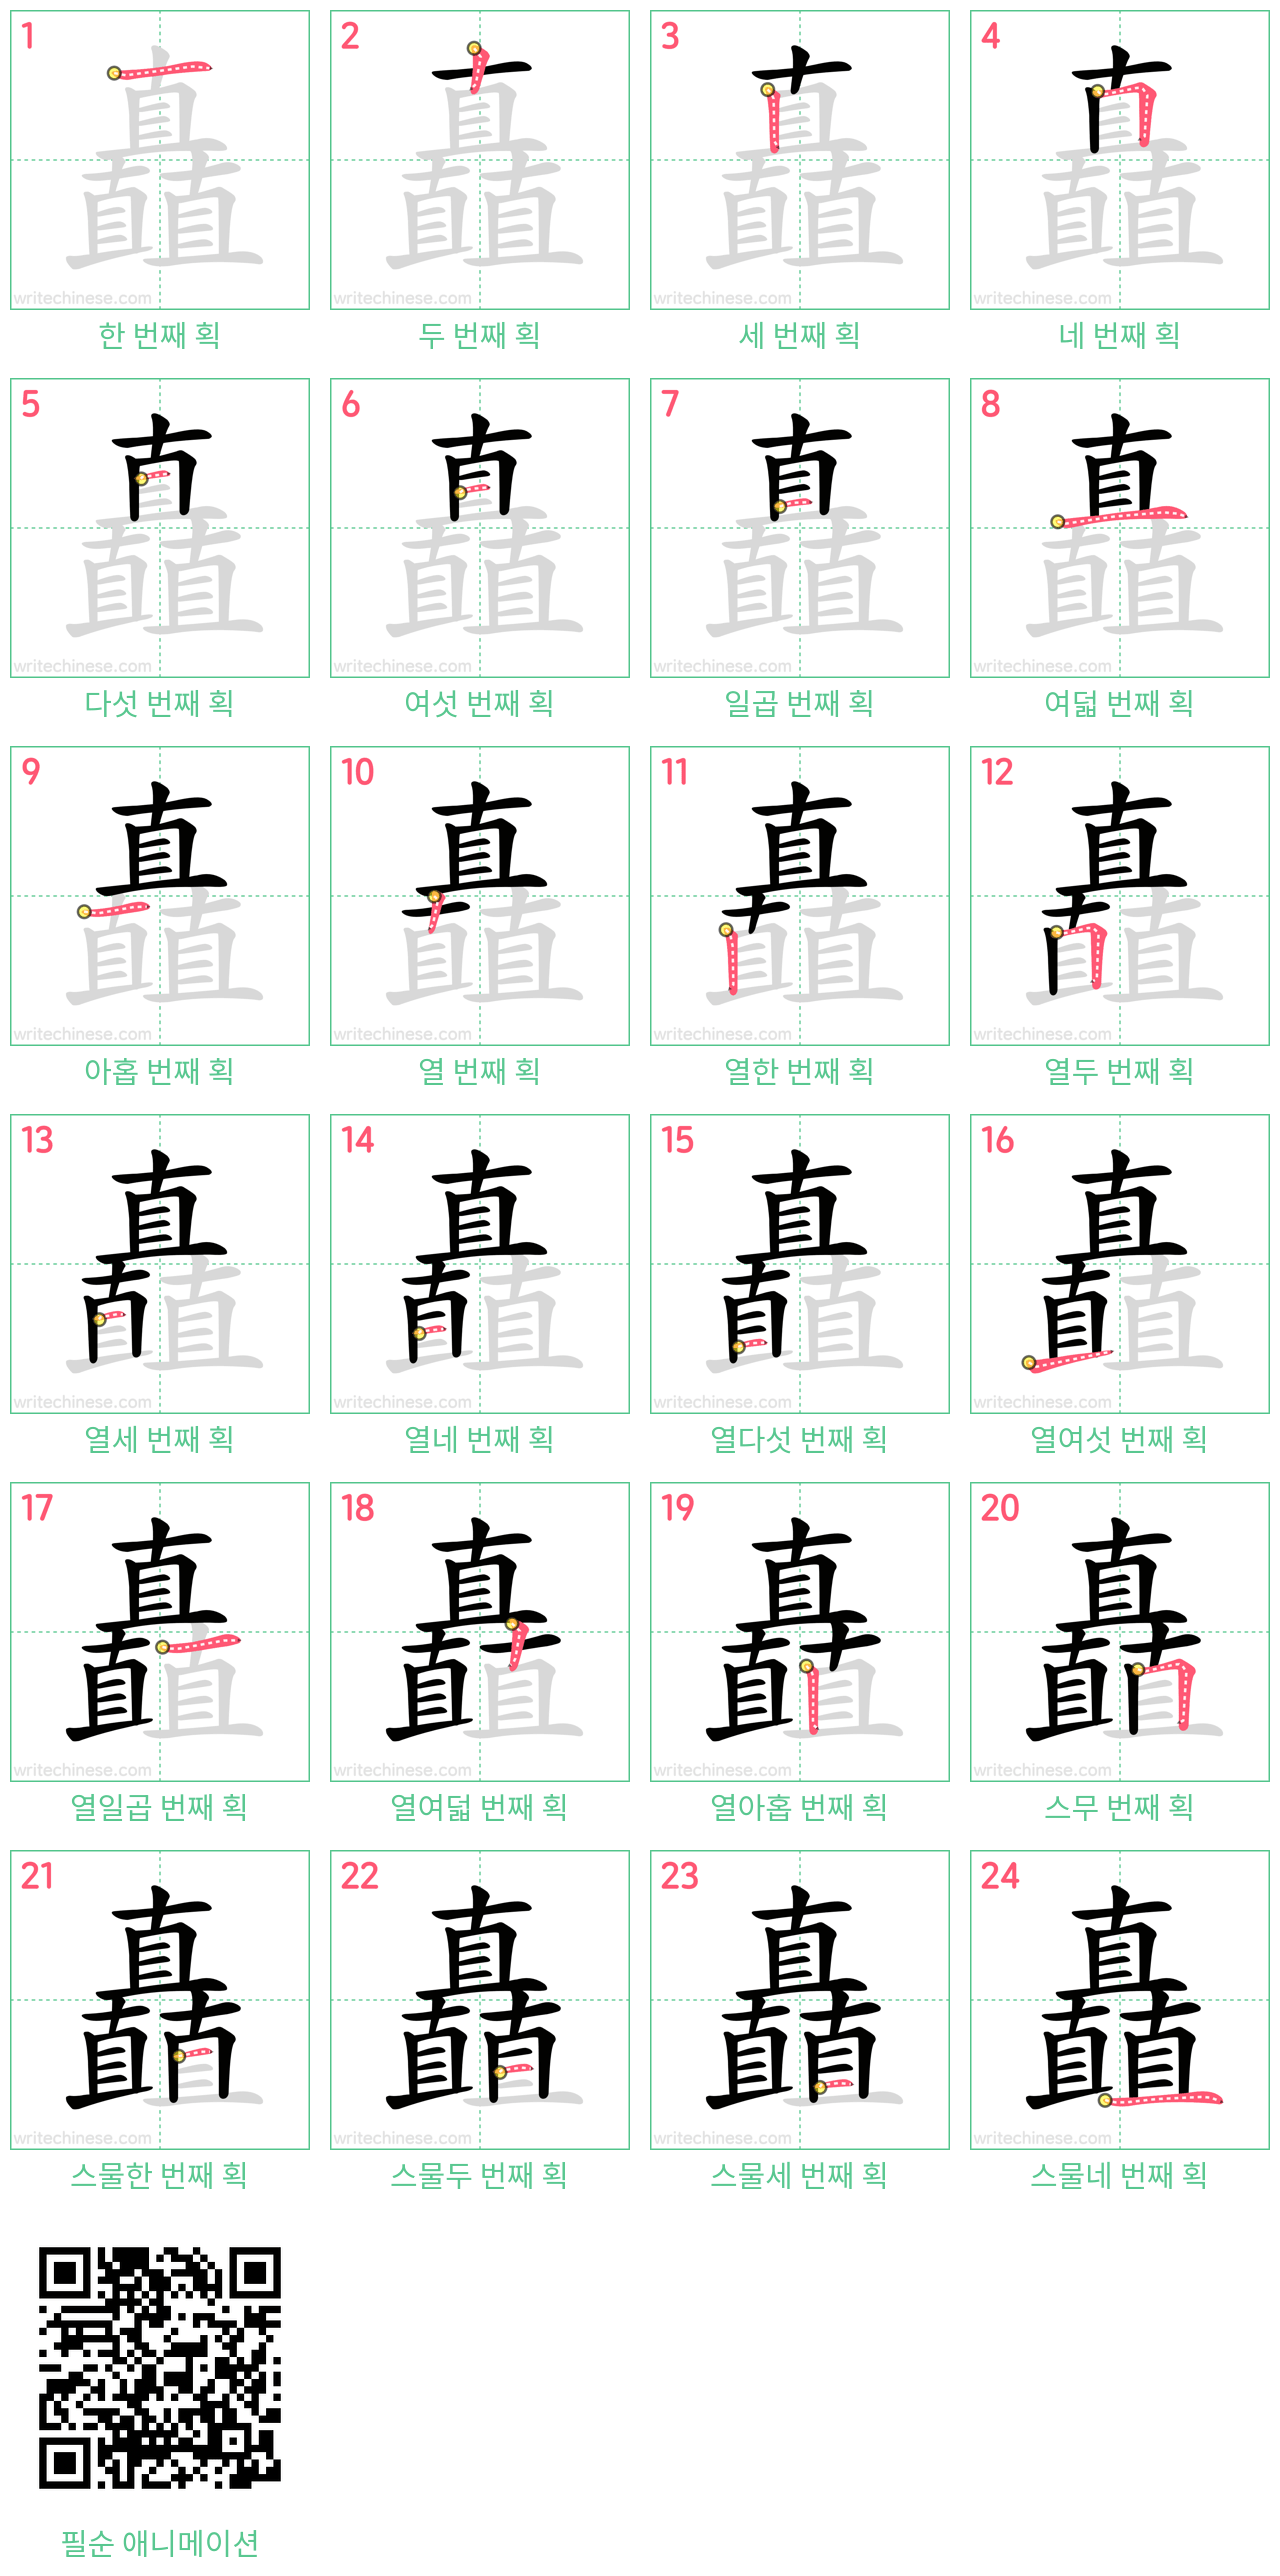 矗 step-by-step stroke order diagrams